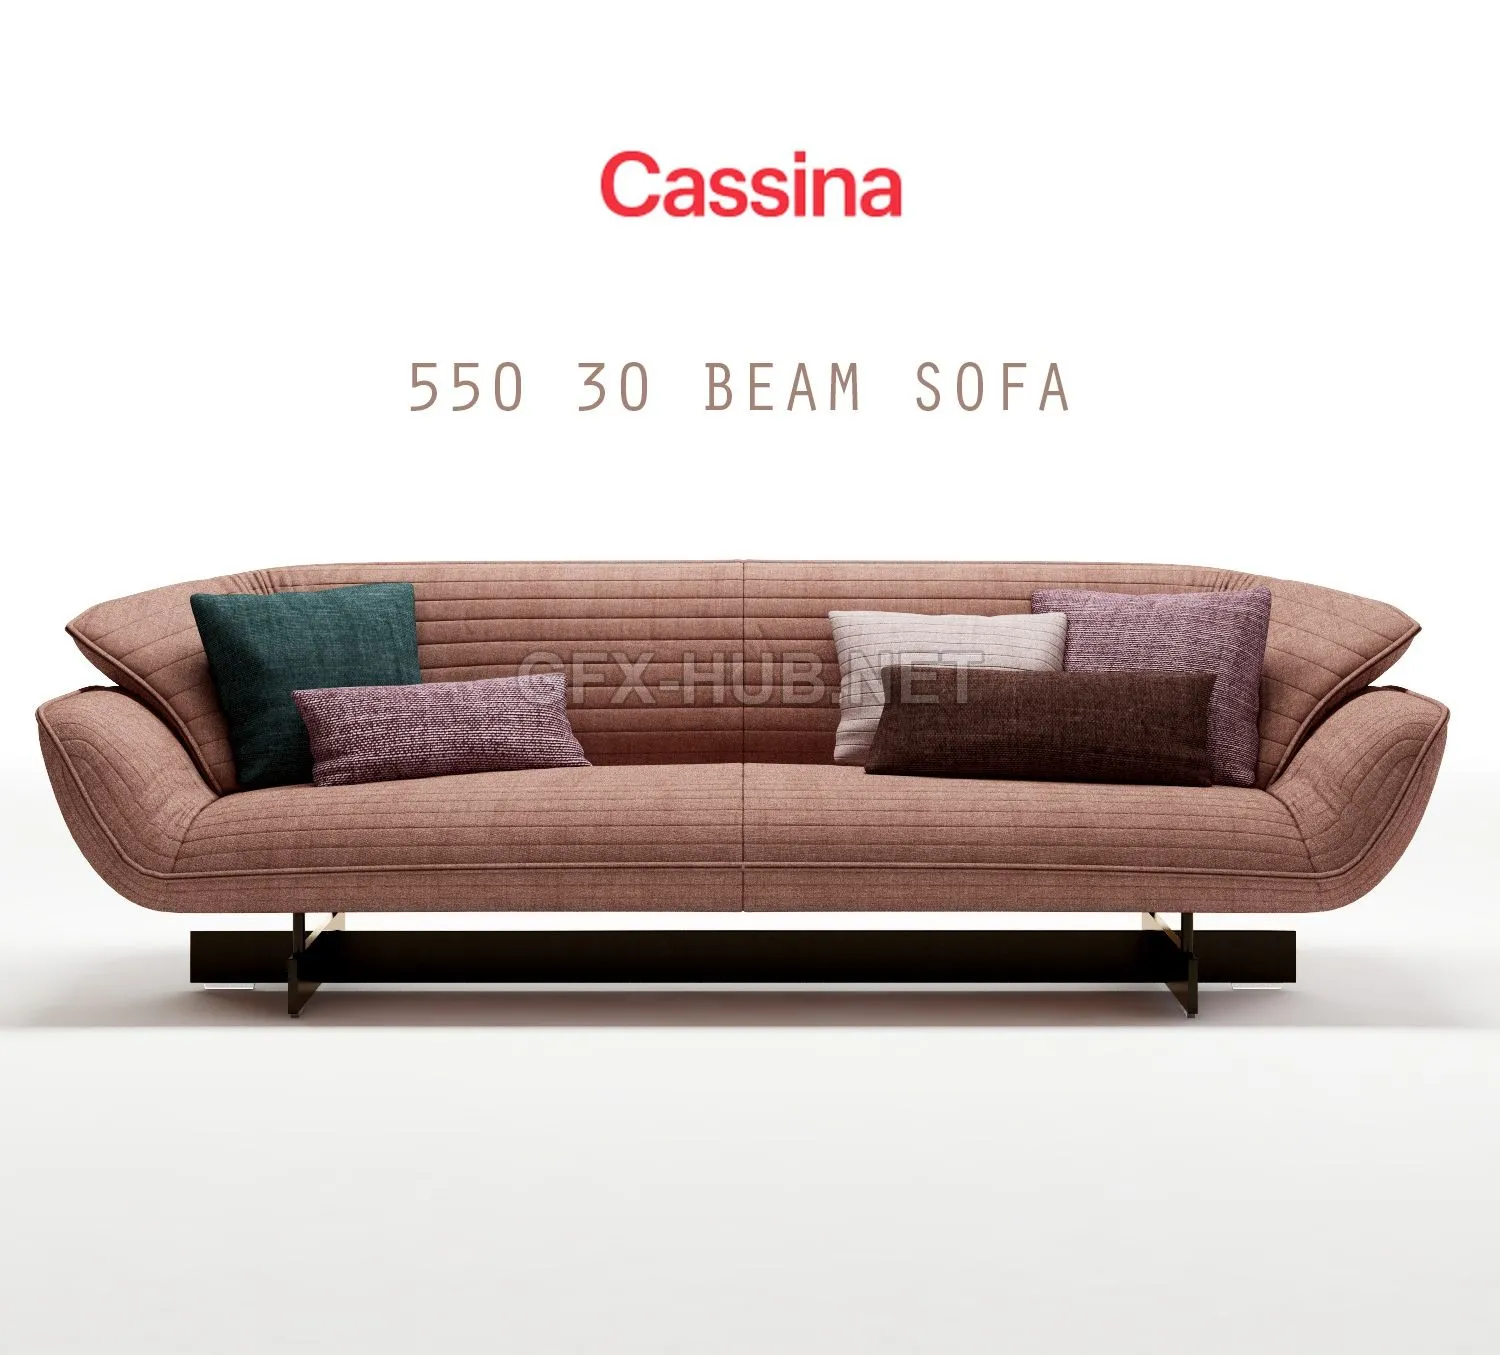 Cassina 550 30 BEAM sofa (max 2011 Vray – 209651